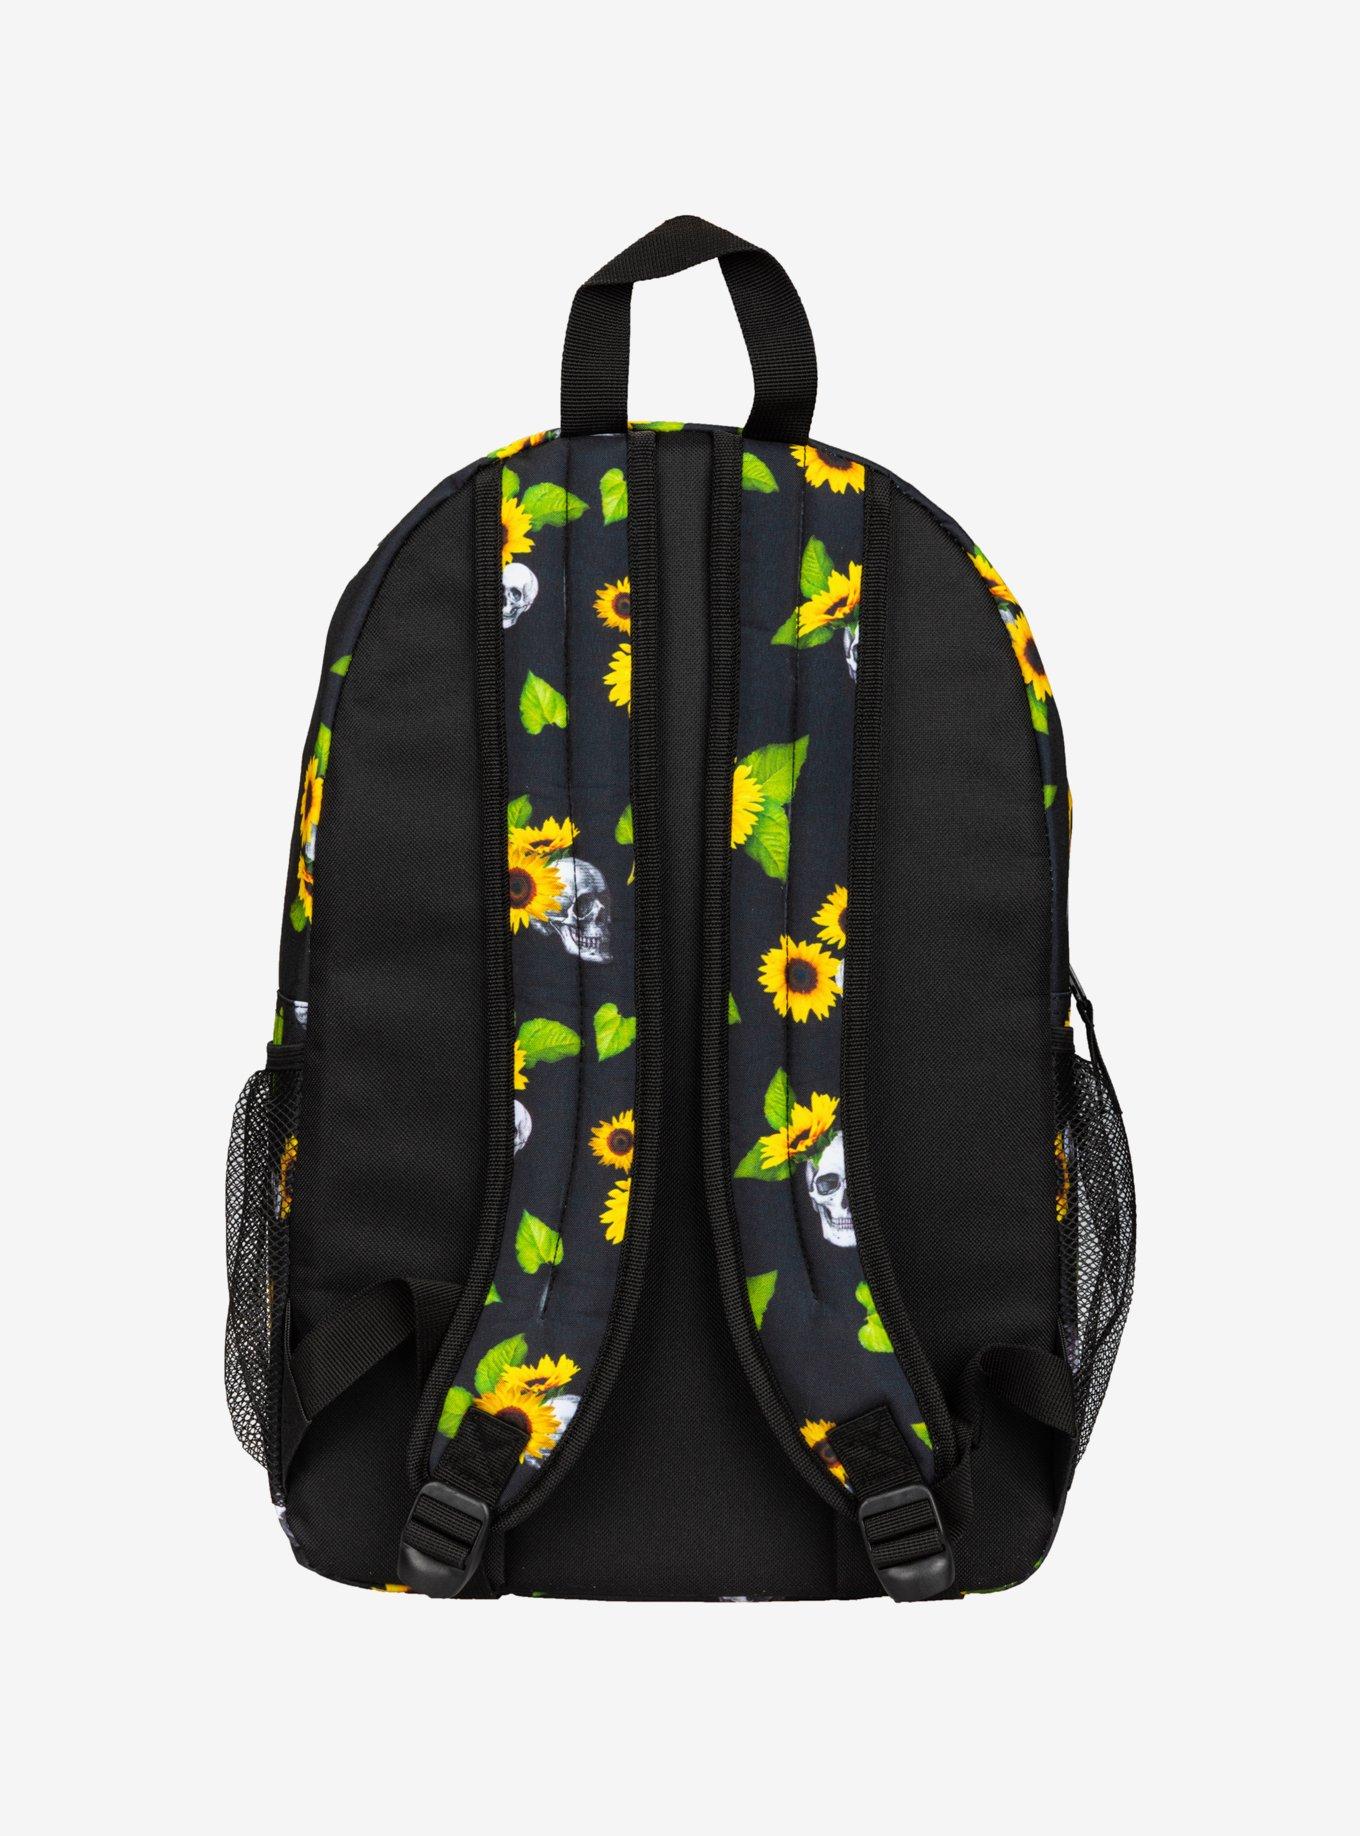 Sunflowers & Skulls Backpack, , alternate